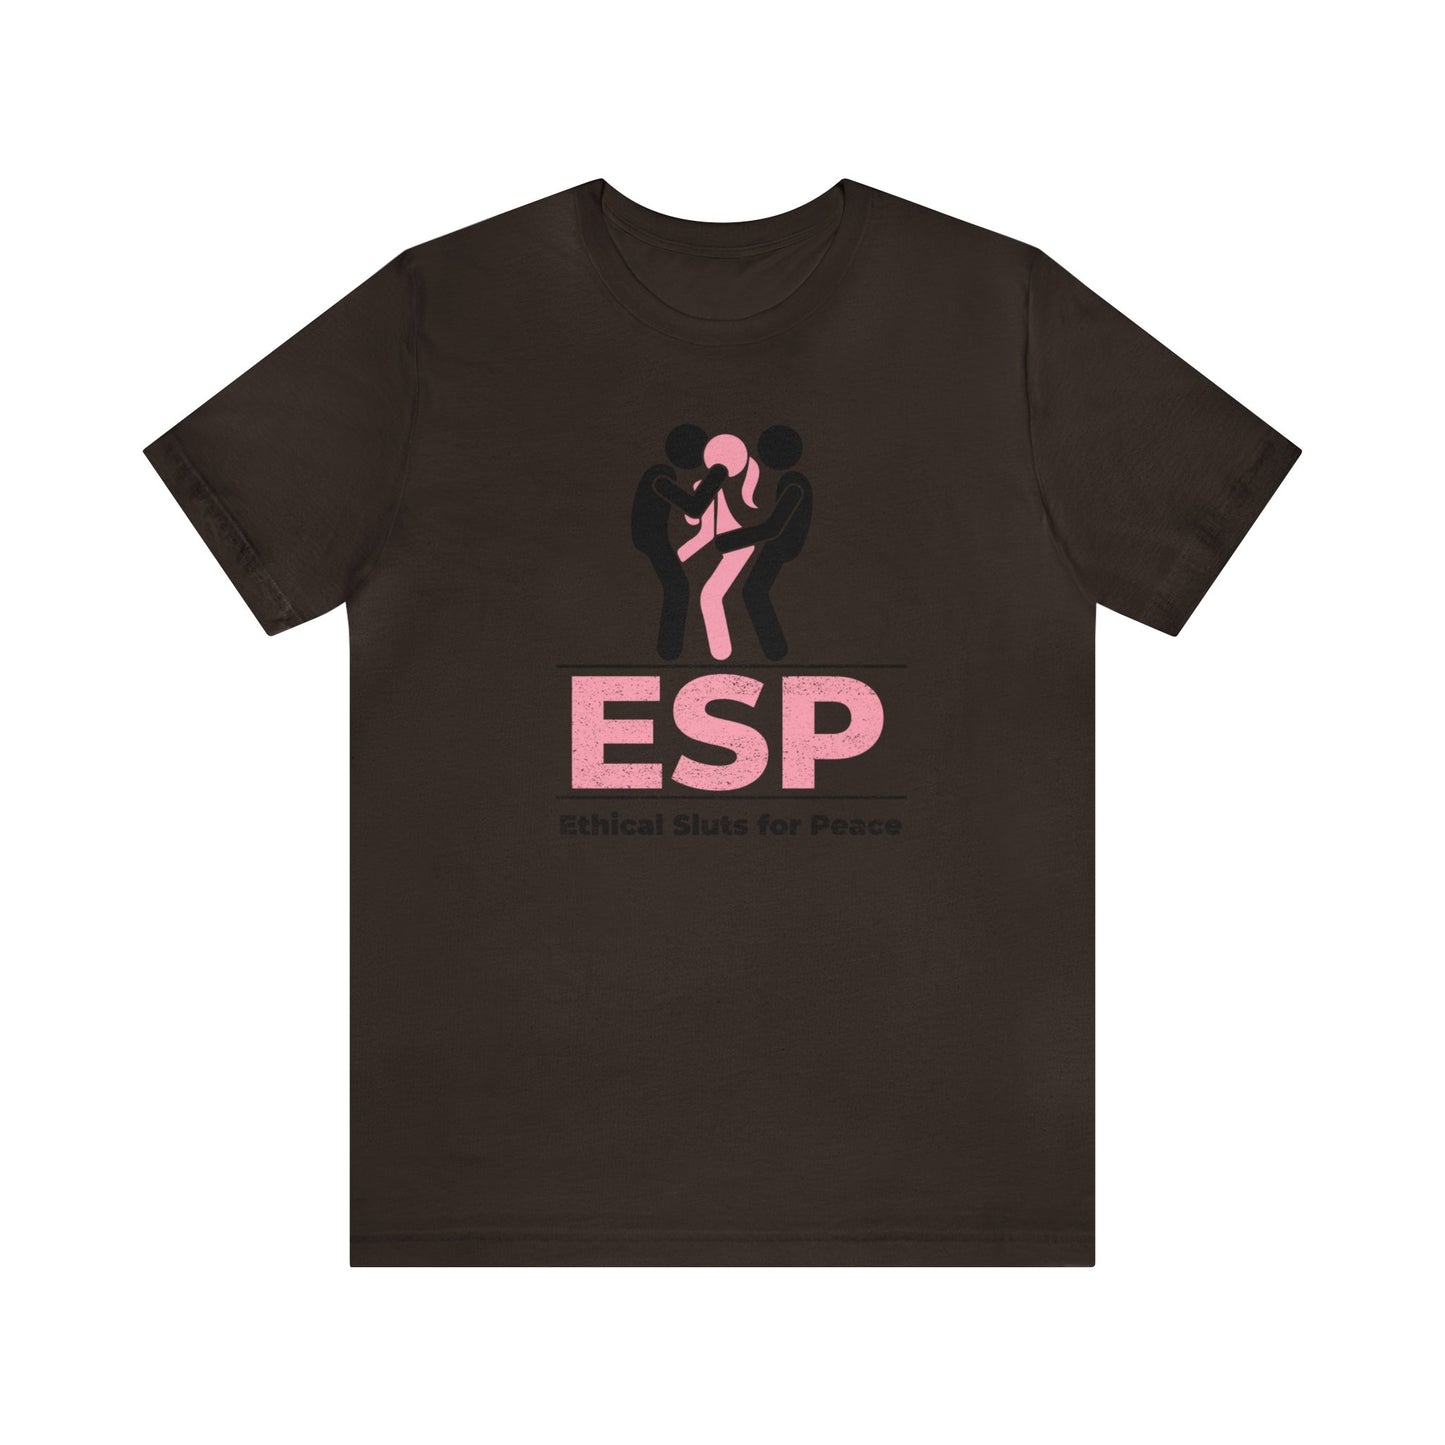 ESP: Ethical Sluts for Peace 2 - Unisex T-Shirt